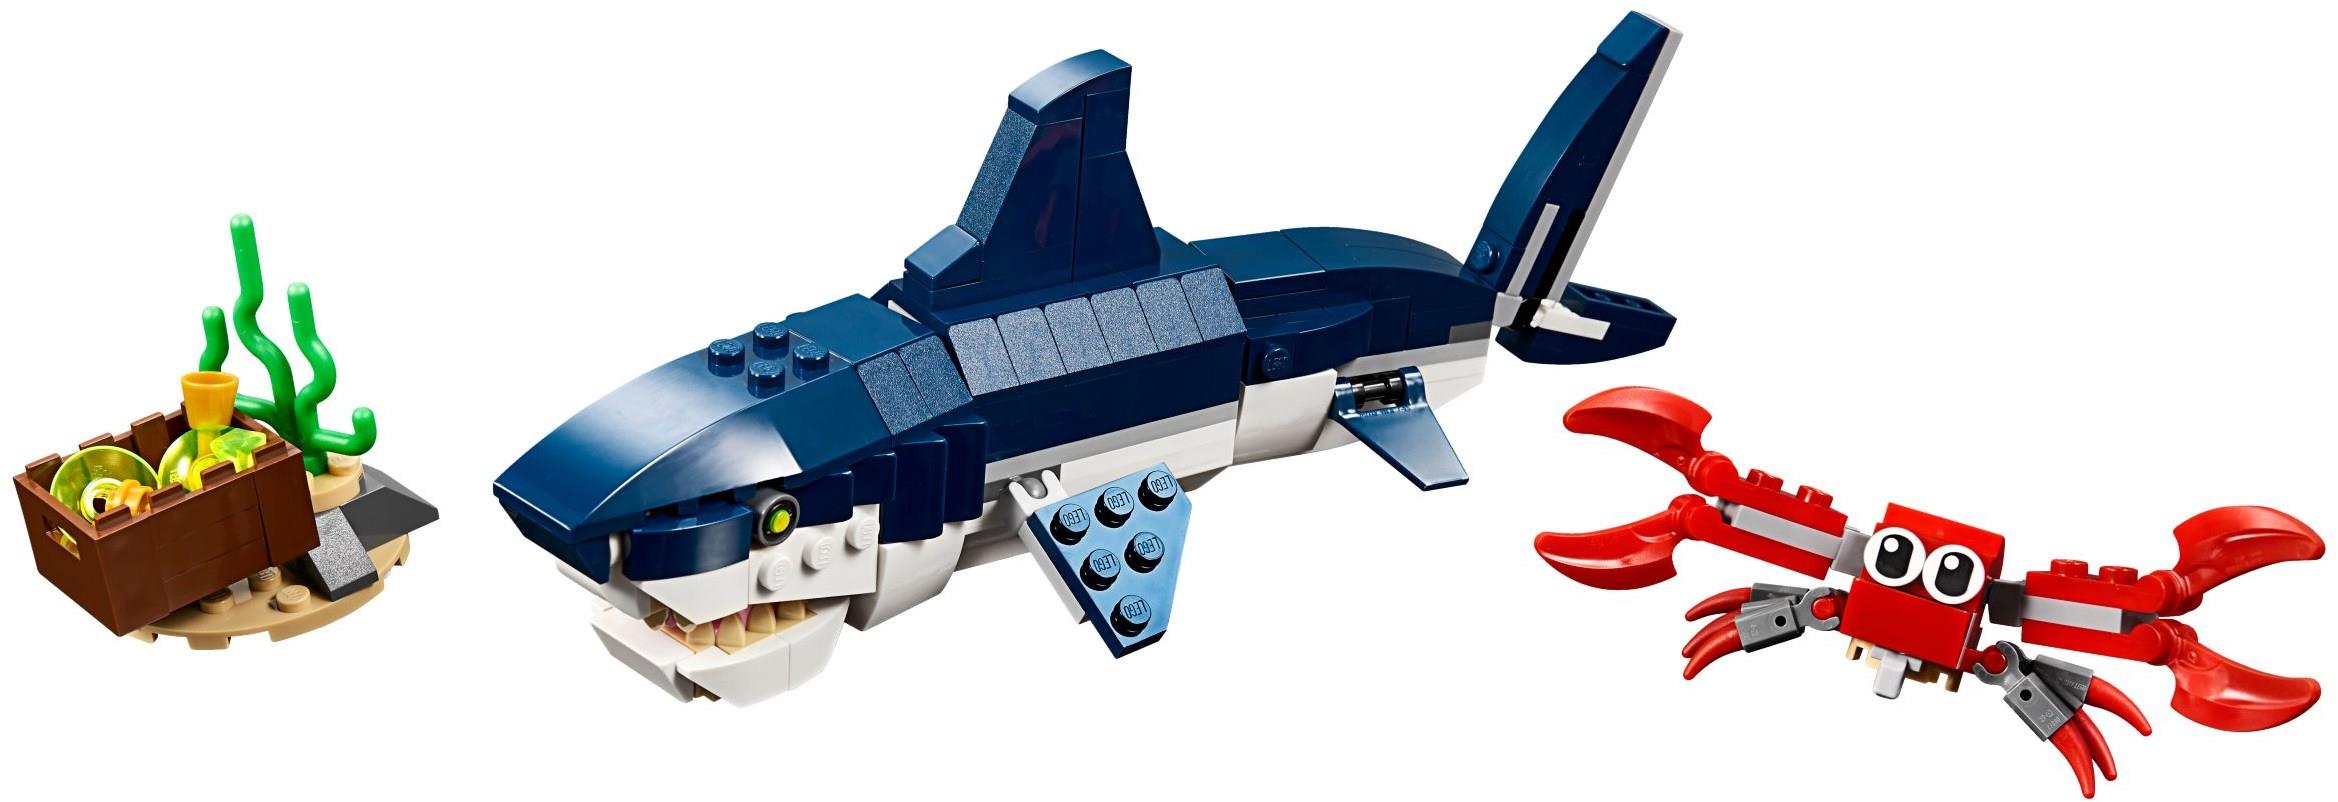 LEGO 31088 Creator Deep Sea Creatures | BrickEconomy